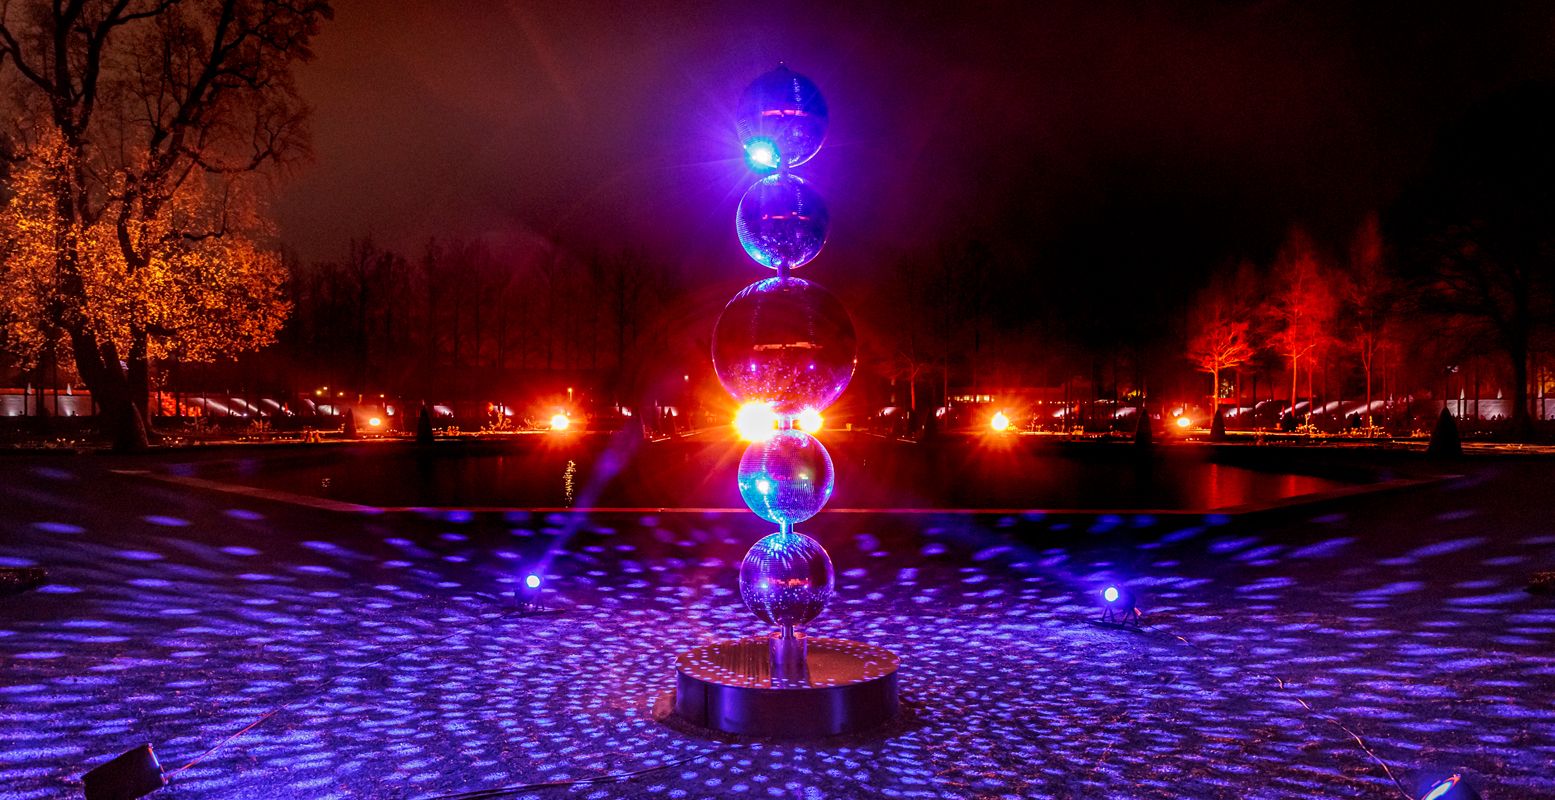 Impressiebeeld van eerder uitgevoerde lichtshow door OORTRR. Foto: Royal Light Festival